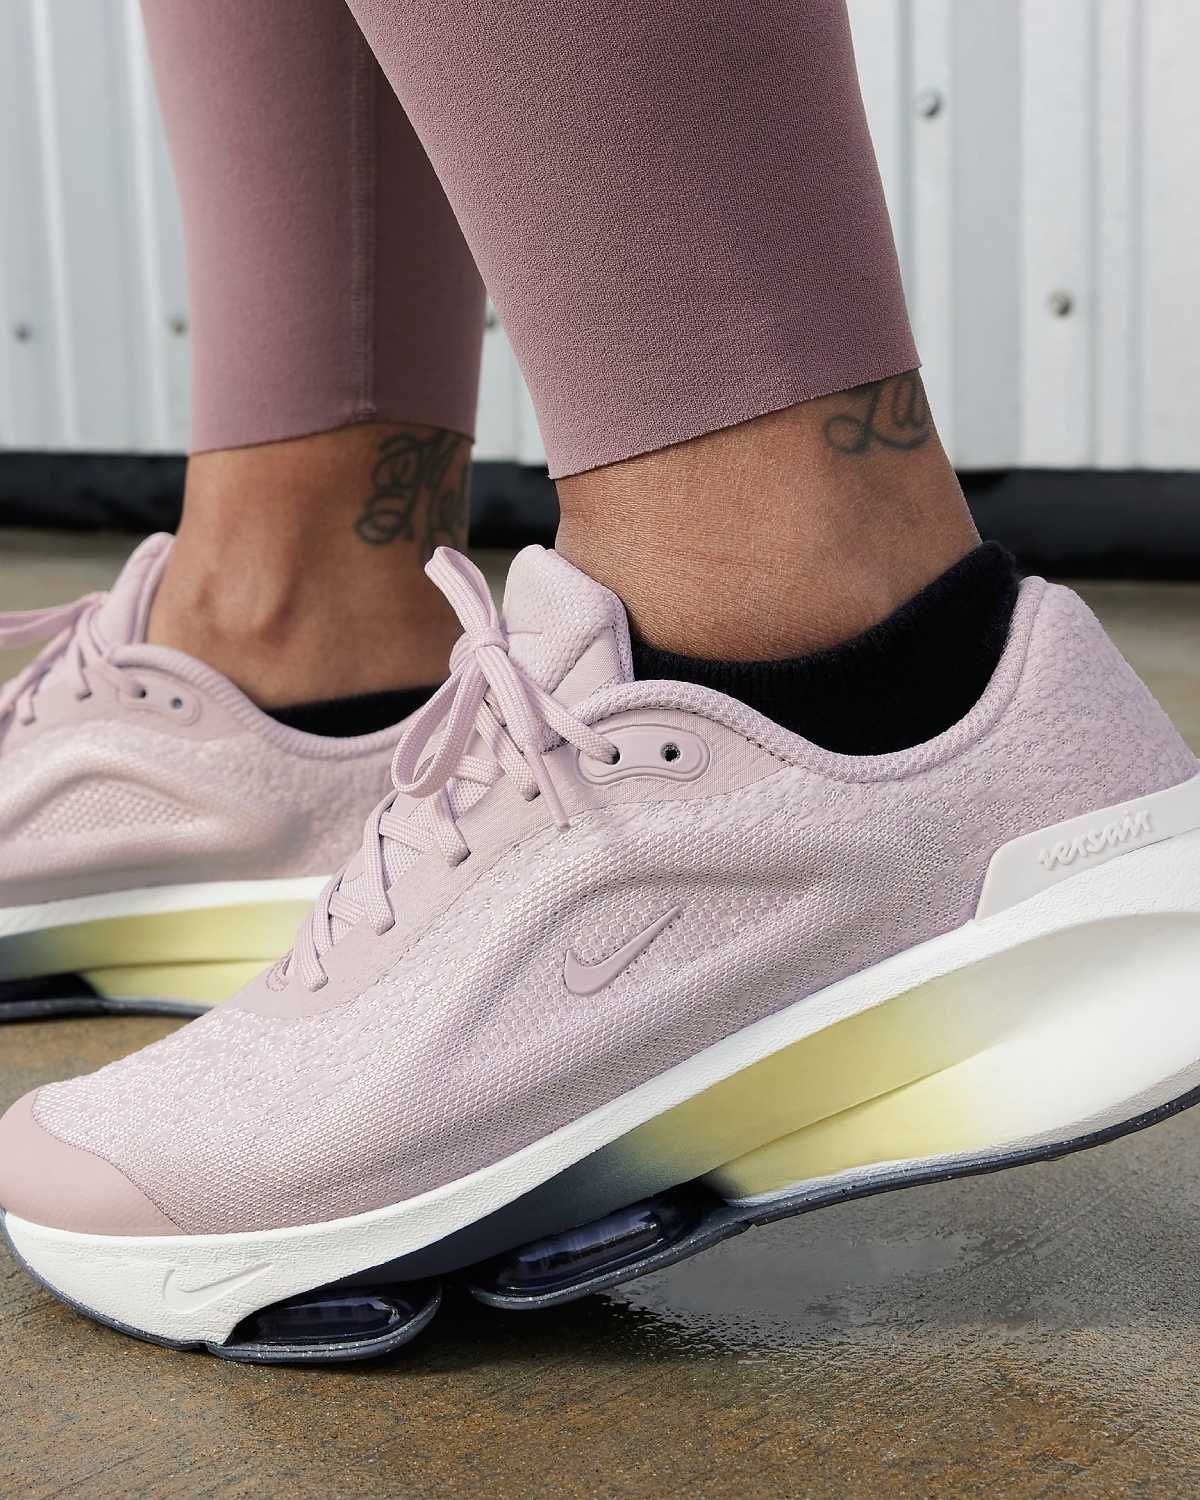 Ces 6 chaussures Nike pour femmes sont parfaites pour la marche et allient confort et style